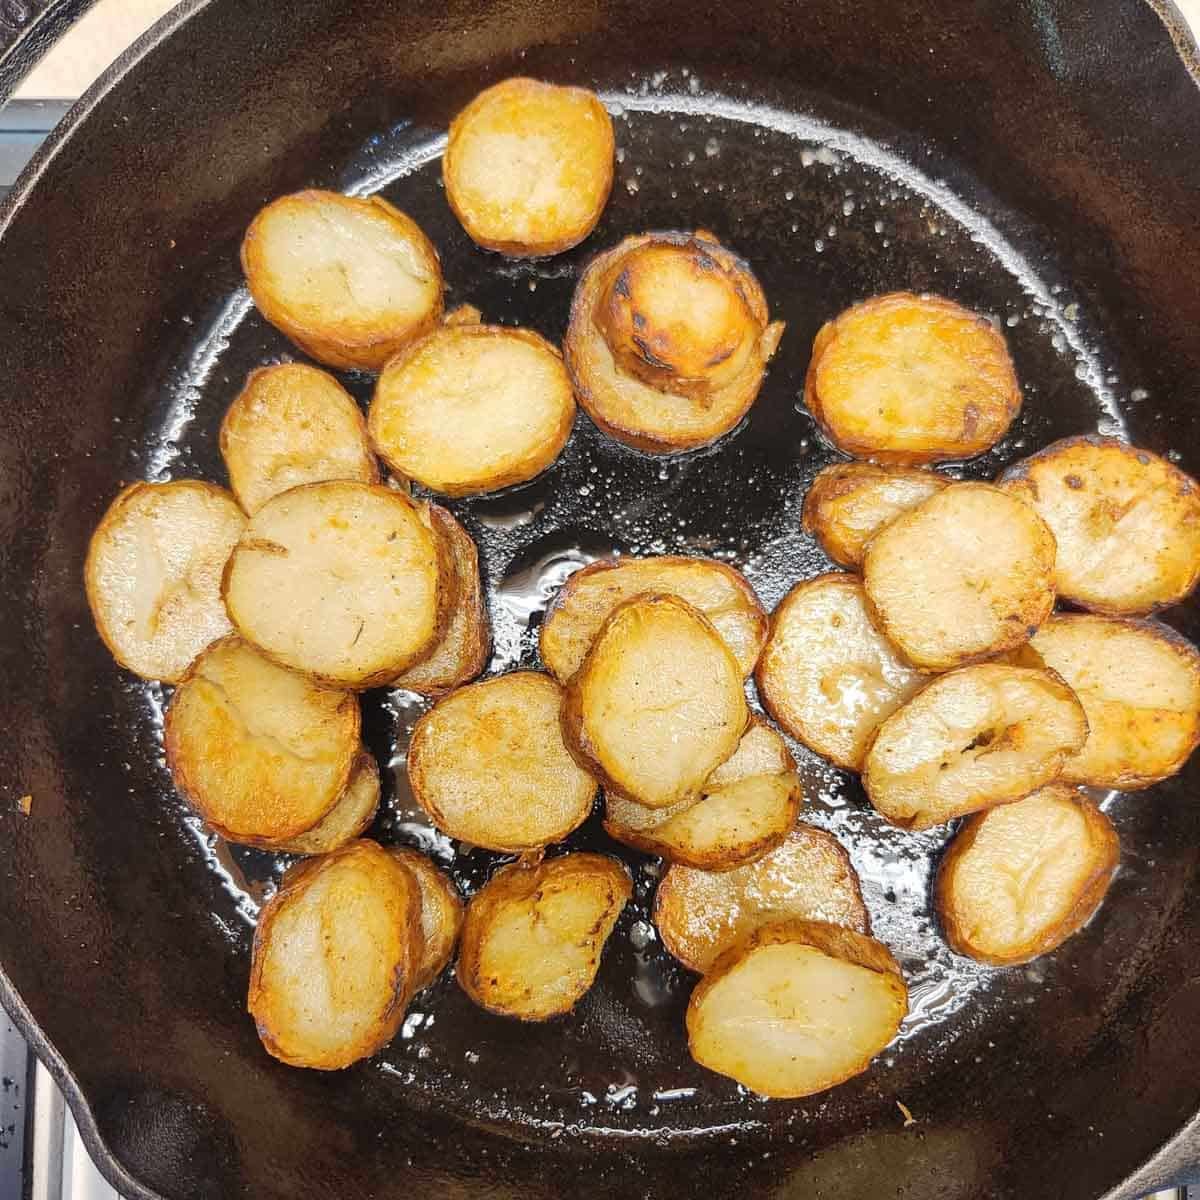 sliced leftover baked potatoes in a skillet